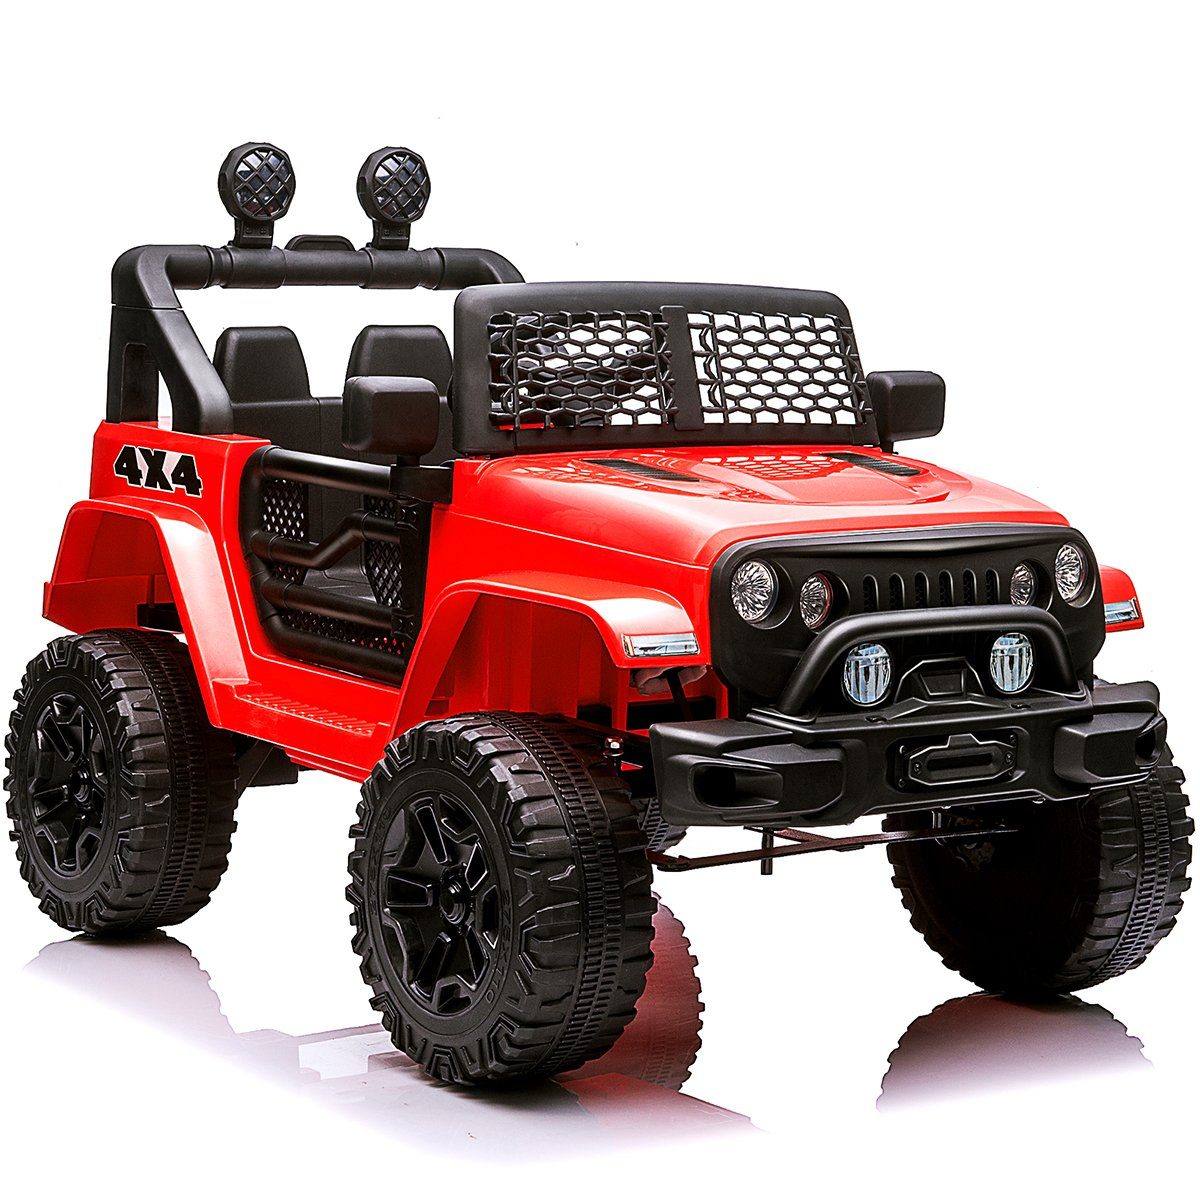 Fangqi Elektro-Kinderauto Jeep elektrisches Kinderauto,2*30W Doppelmotoren, 12V4,5Ah Batterie, Belastbarkeit 30 kg, Mit LED-Licht, 2-Gang-Softstart-Elektroauto mit Hupe, Frontlicht Rot